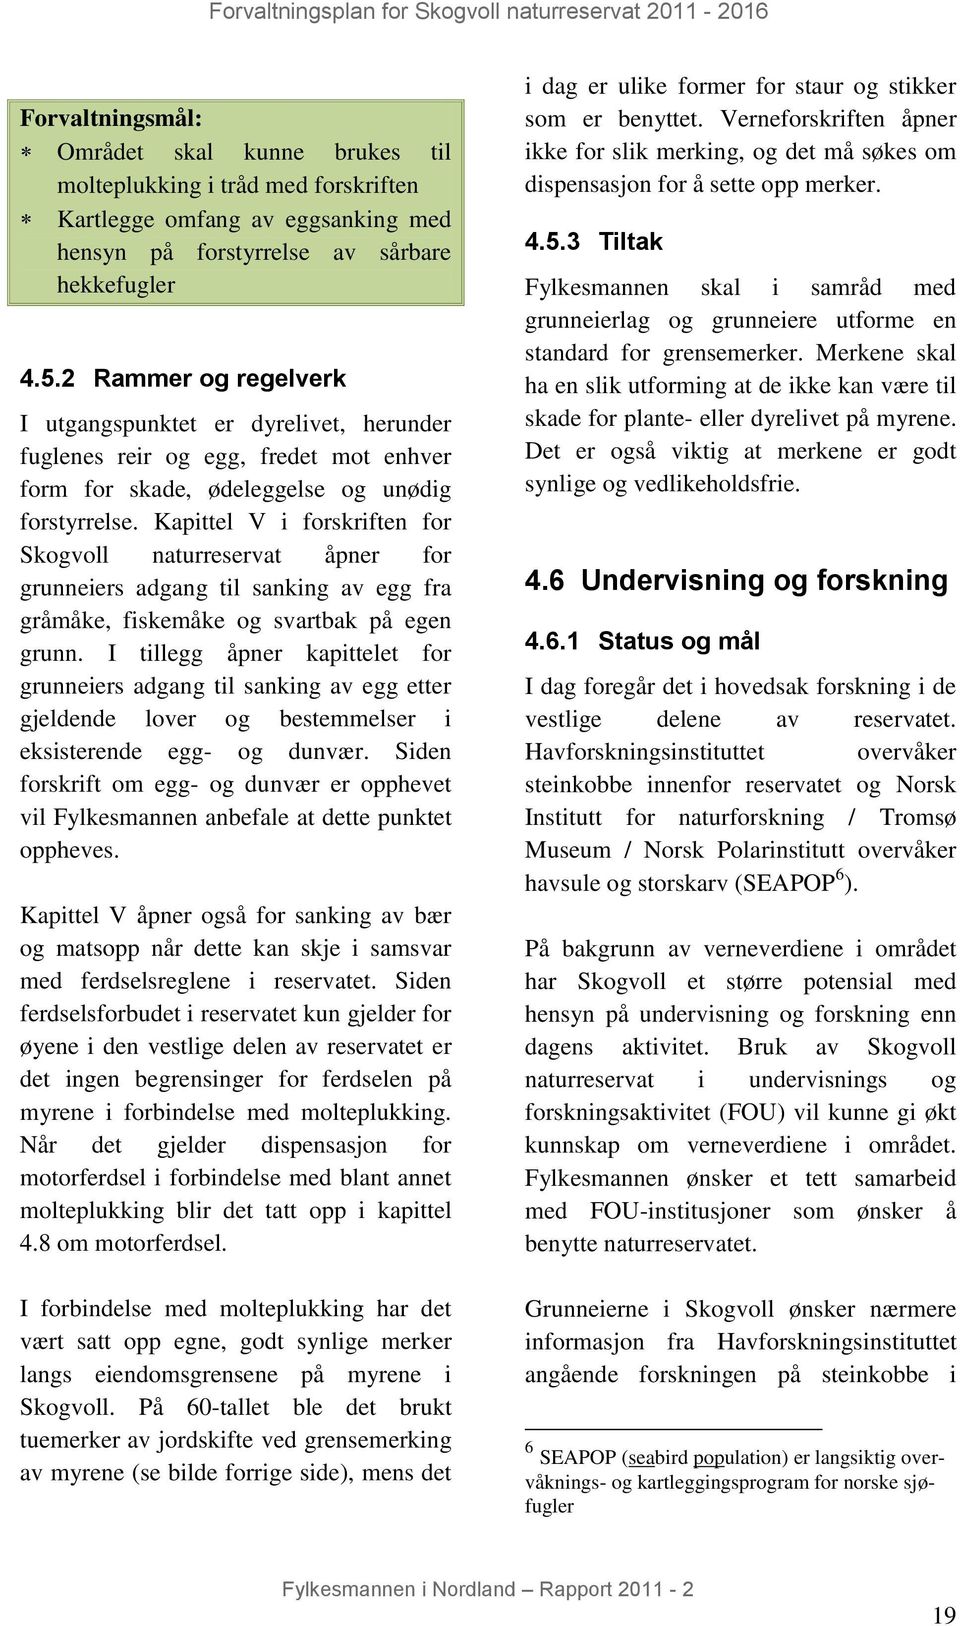 Kapittel V i forskriften for Skogvoll naturreservat åpner for grunneiers adgang til sanking av egg fra gråmåke, fiskemåke og svartbak på egen grunn.